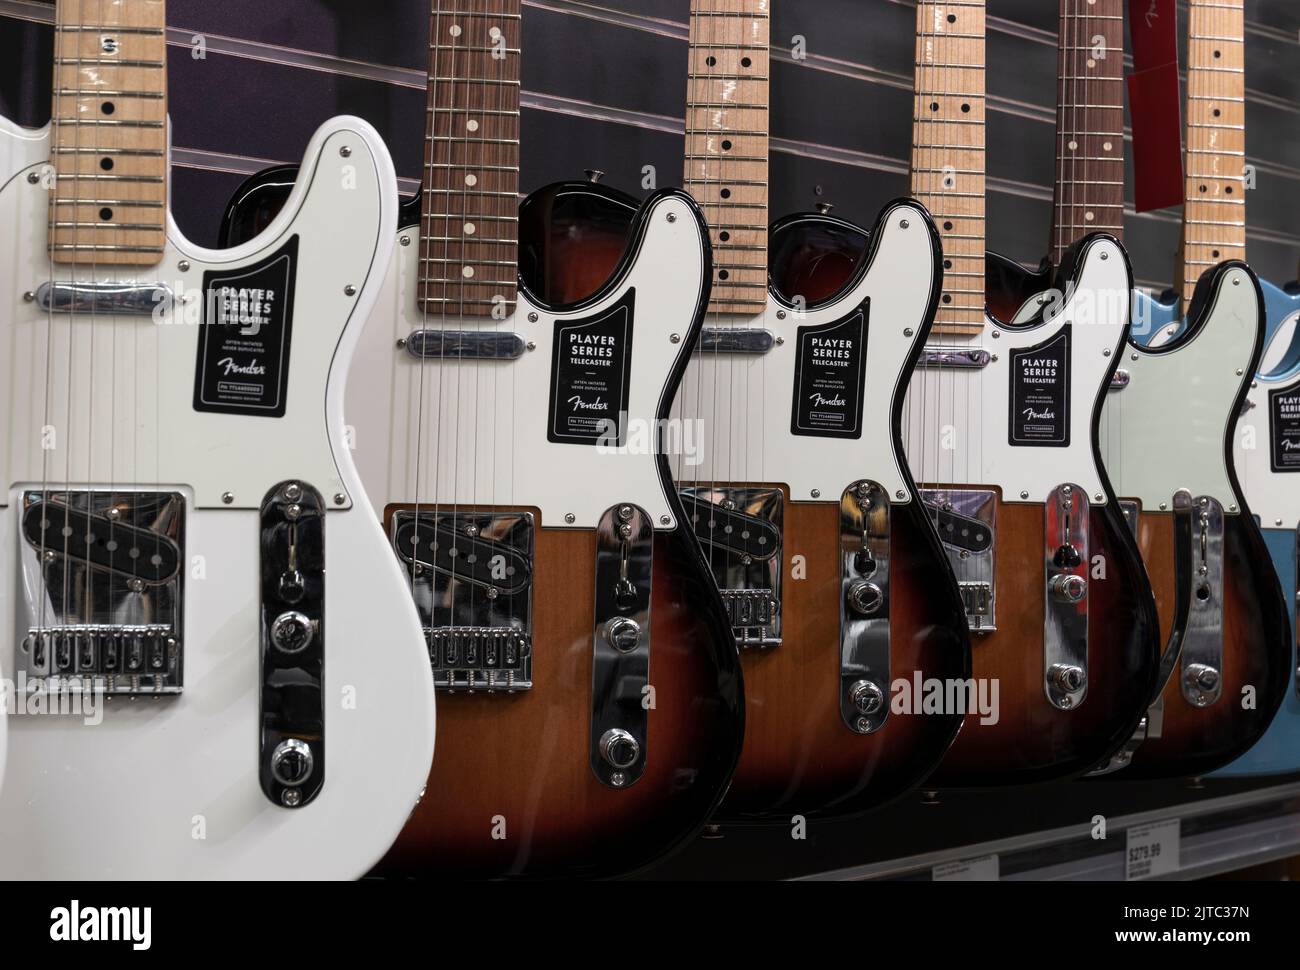 Muncie - Circa août 2022: Fender Telecaster guitare à un magasin de musique. Les téles sont mondialement connues pour leur son tangy distinctif. Banque D'Images